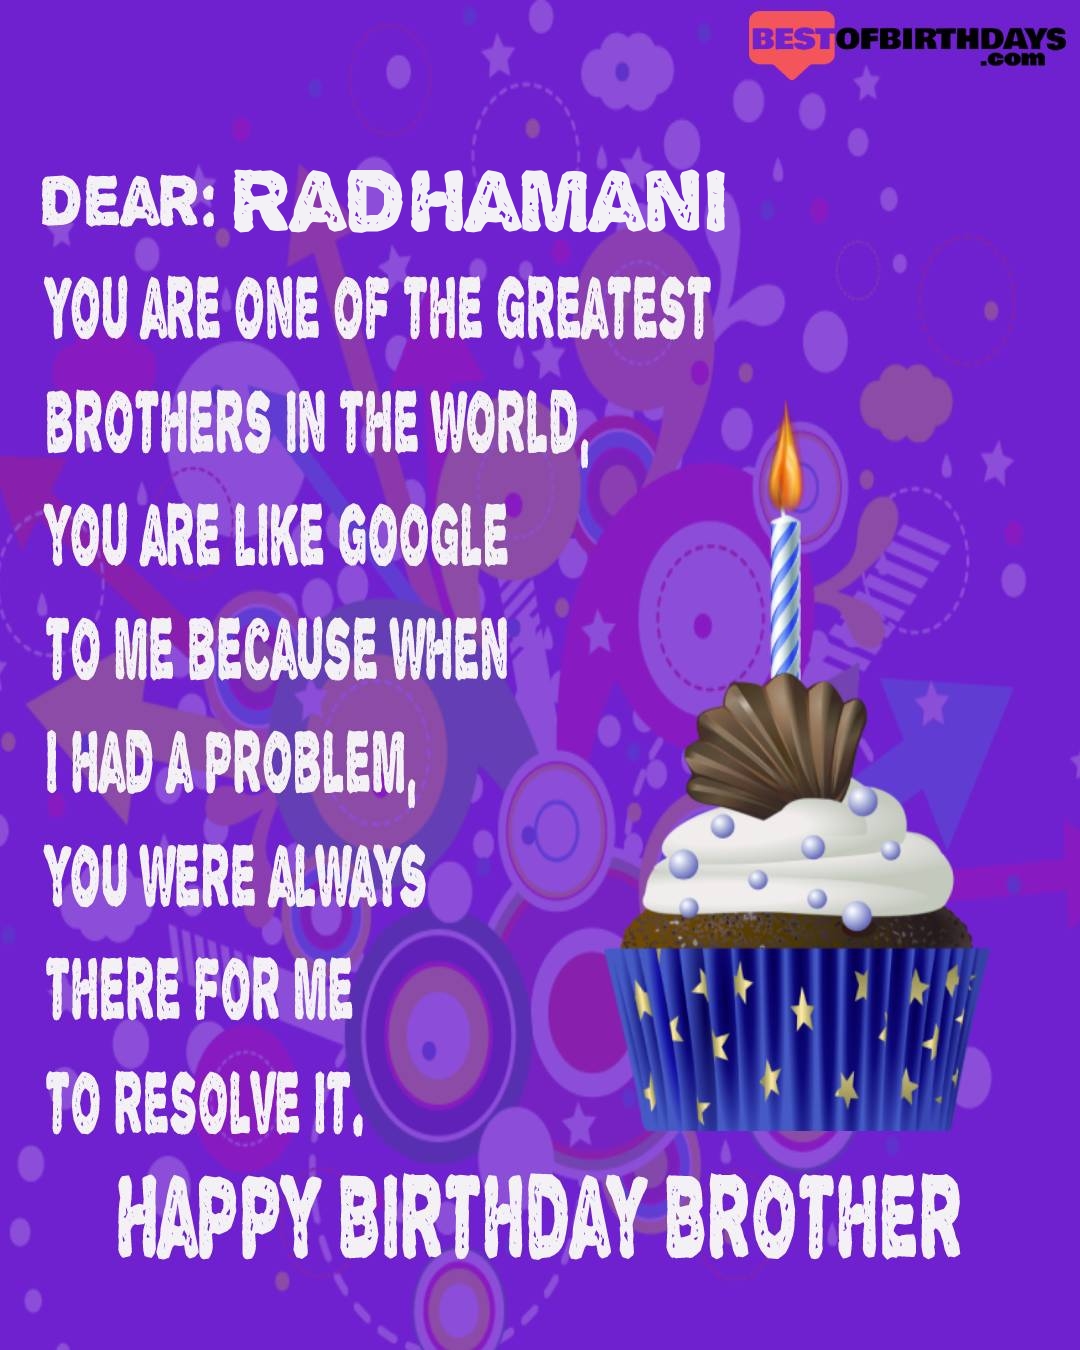 Happy birthday radhamani bhai brother bro